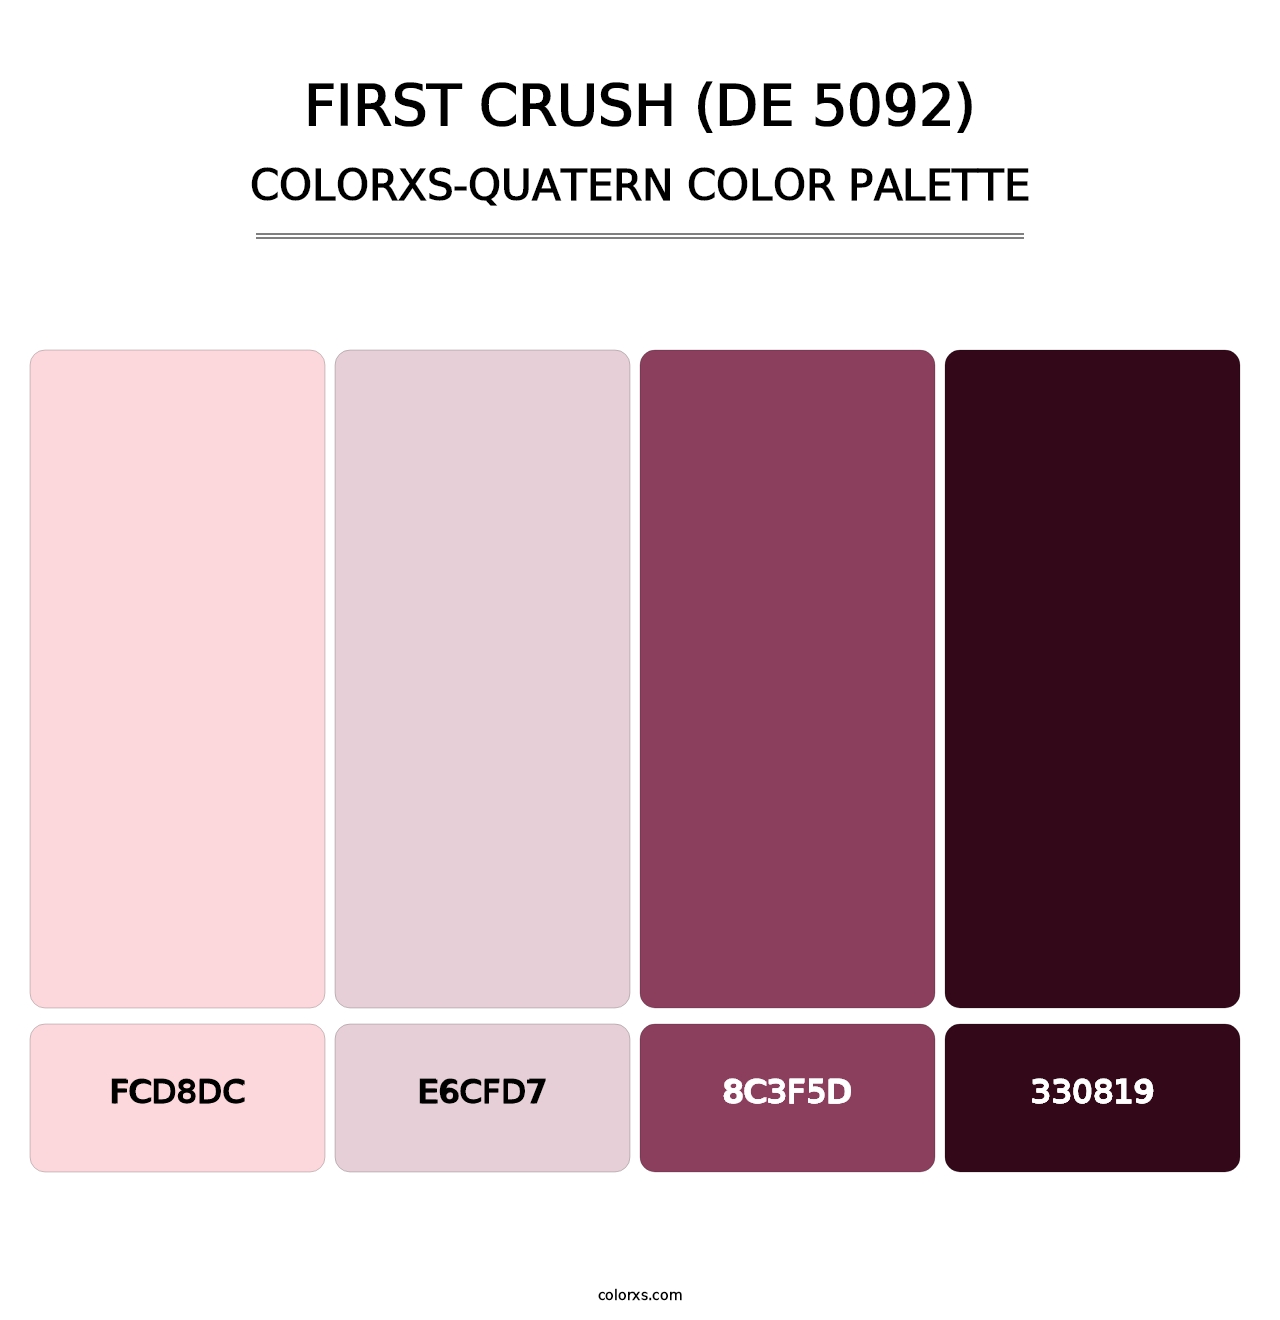 First Crush (DE 5092) - Colorxs Quatern Palette